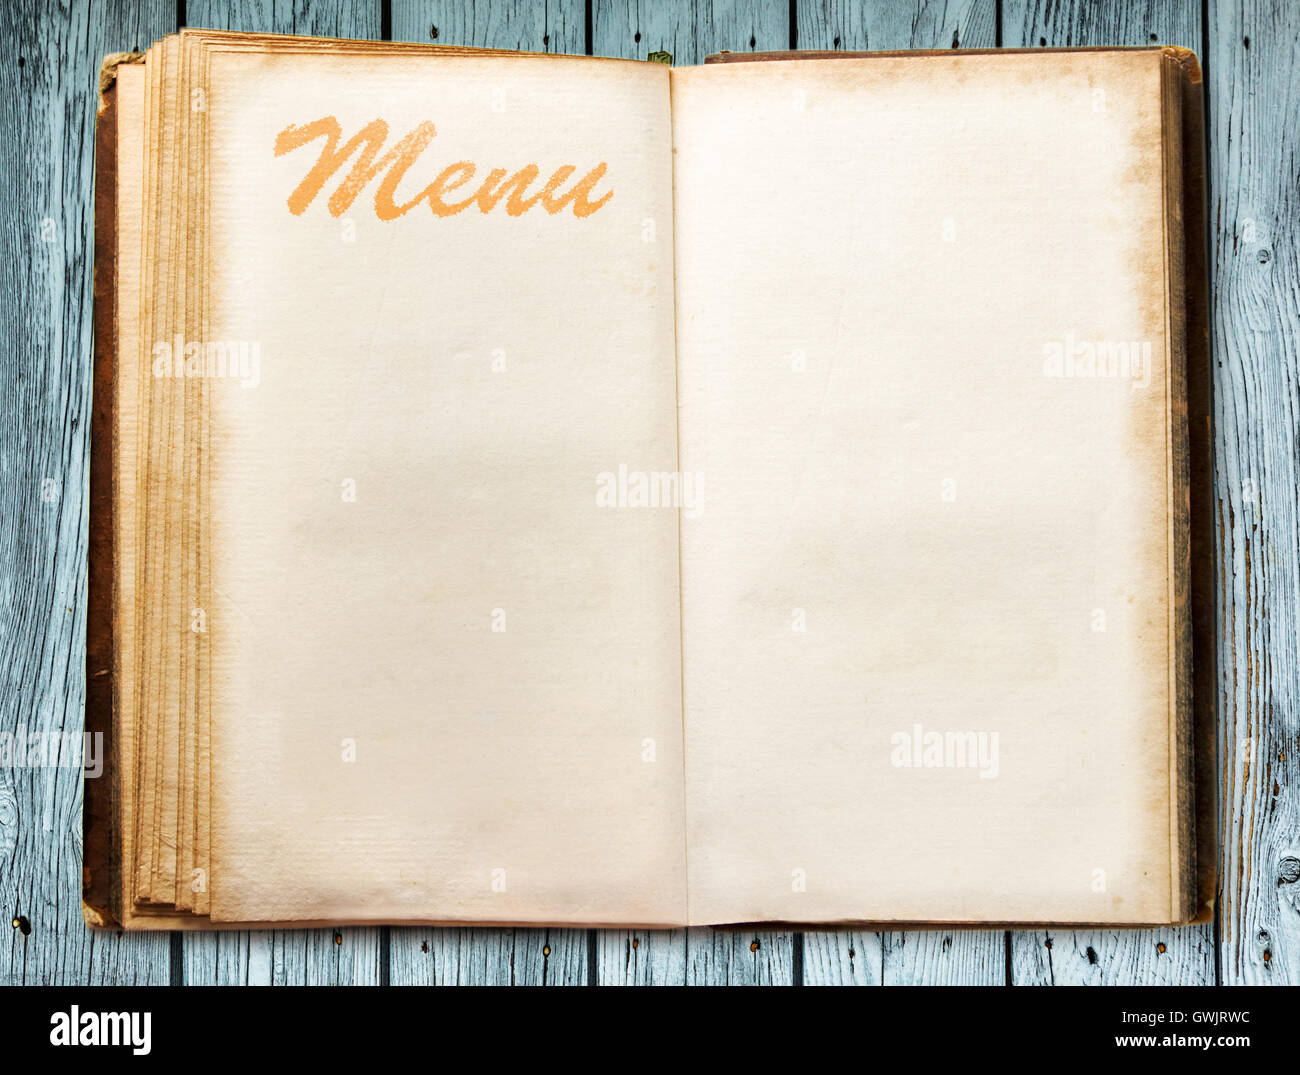 Những cuốn menu book vintage thật sự là một kiệt tác trong lịch sử ẩm thực. Những trang sách xưa được trang trí đầy kỷ niệm và lịch sử. Hãy khám phá trang trí cổ điển và sáng tạo nội dung mới để tạo ra một menu book độc đáo. 